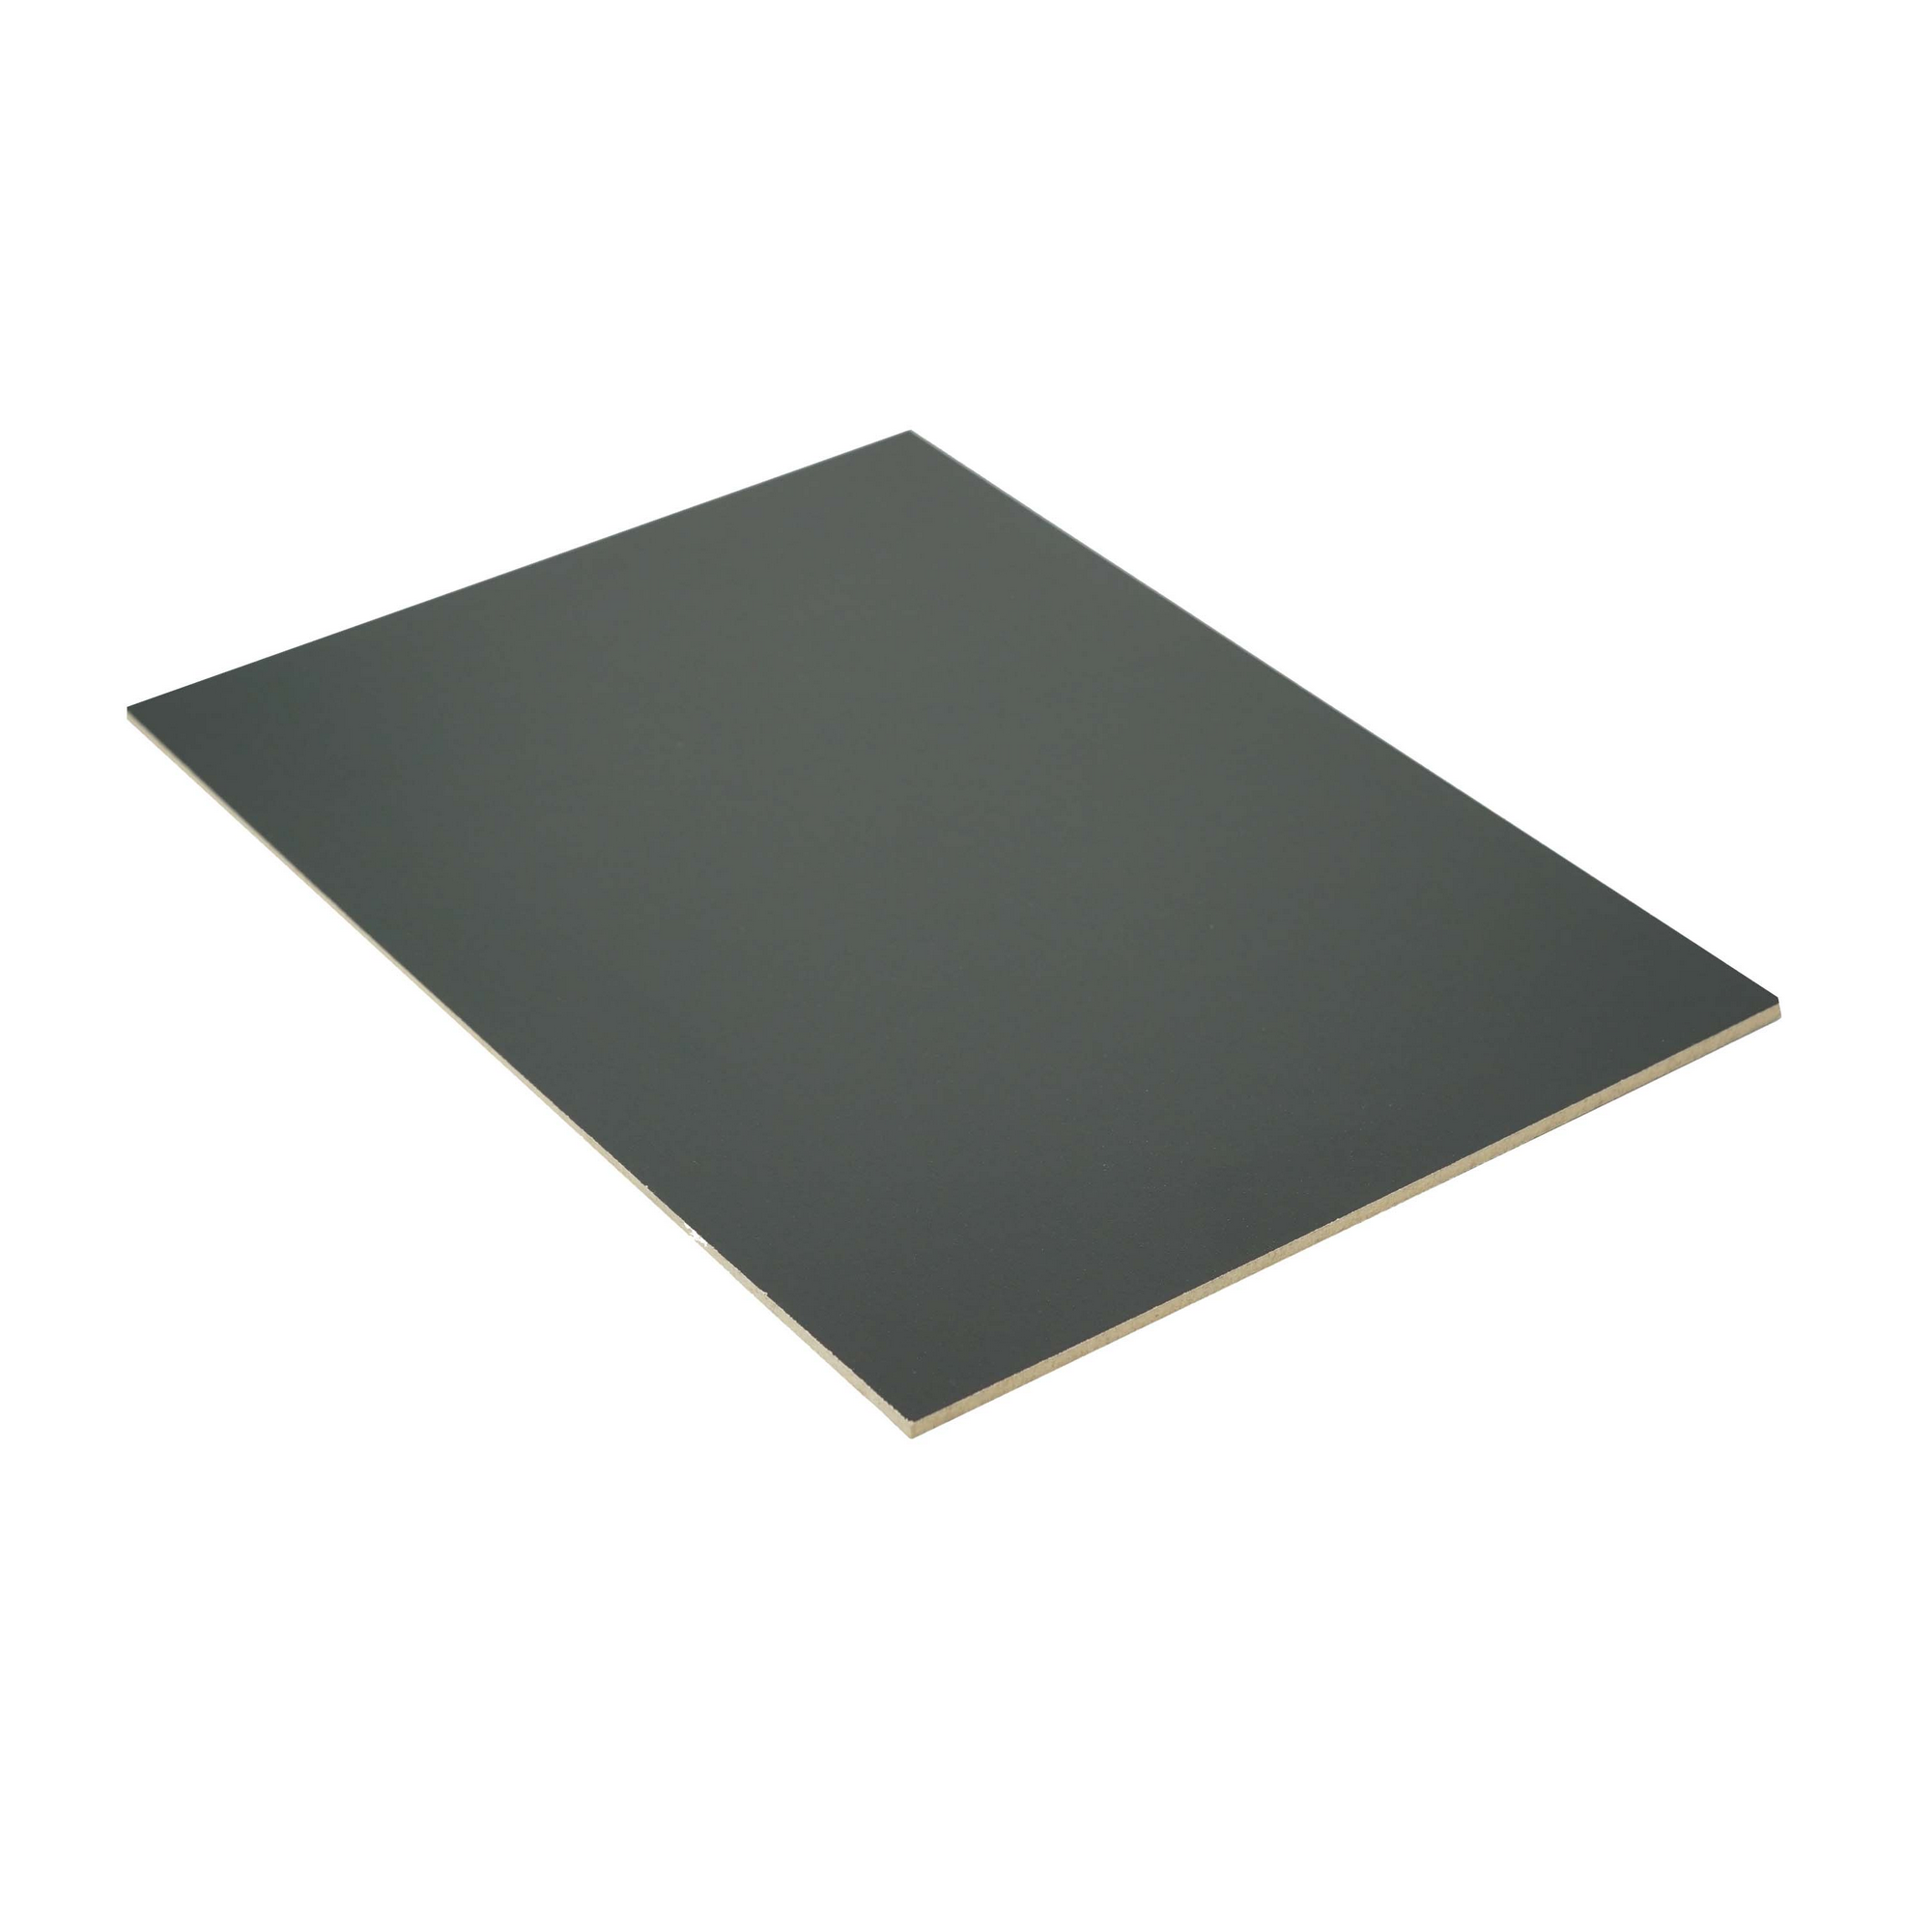 Dünn-MDF-Platte melaminbeschichtet 2800 x 2070 x 3 mm + product picture